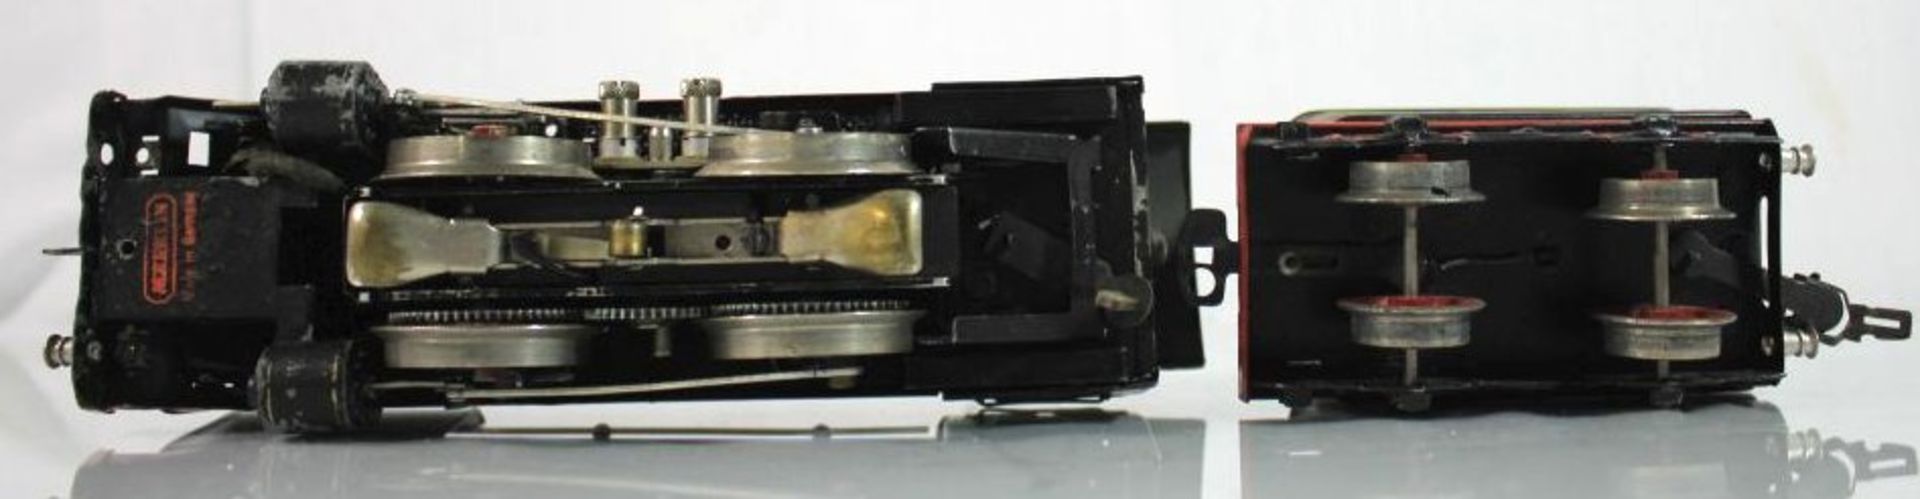 MÄRKLIN- Dampflok mit Tender, Spur 0, wohl 30er Jahre, 20 Volt, Funktion nicht geprüft, H-9cm - Bild 3 aus 4